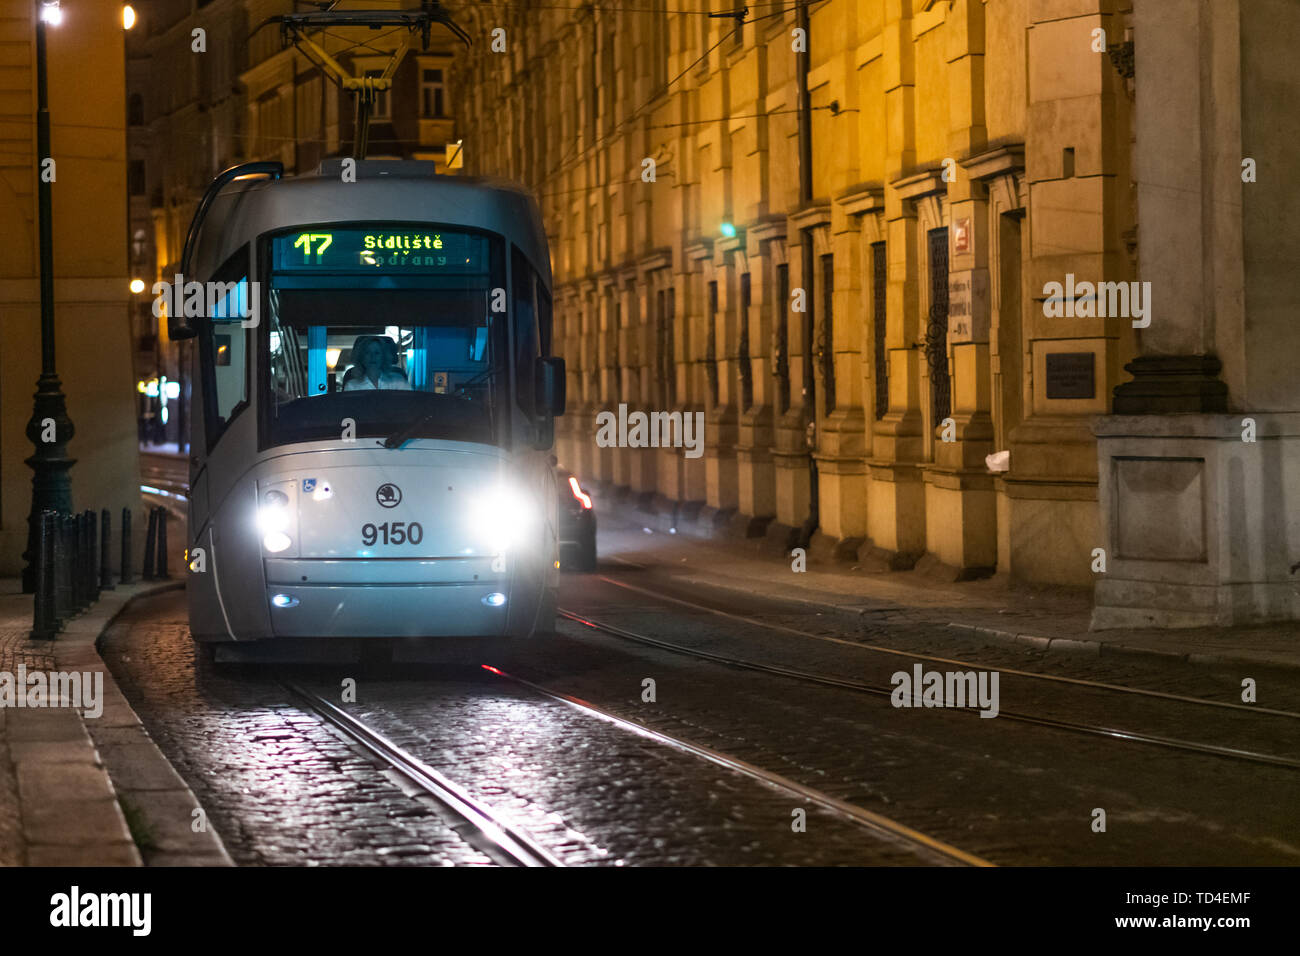 Prag, Tschechische - 12. APRIL 2019: eine Straßenbahn in Prag Reisen durch die Nacht mit einem weiblichen Fahrer an der Vorderseite Stockfoto